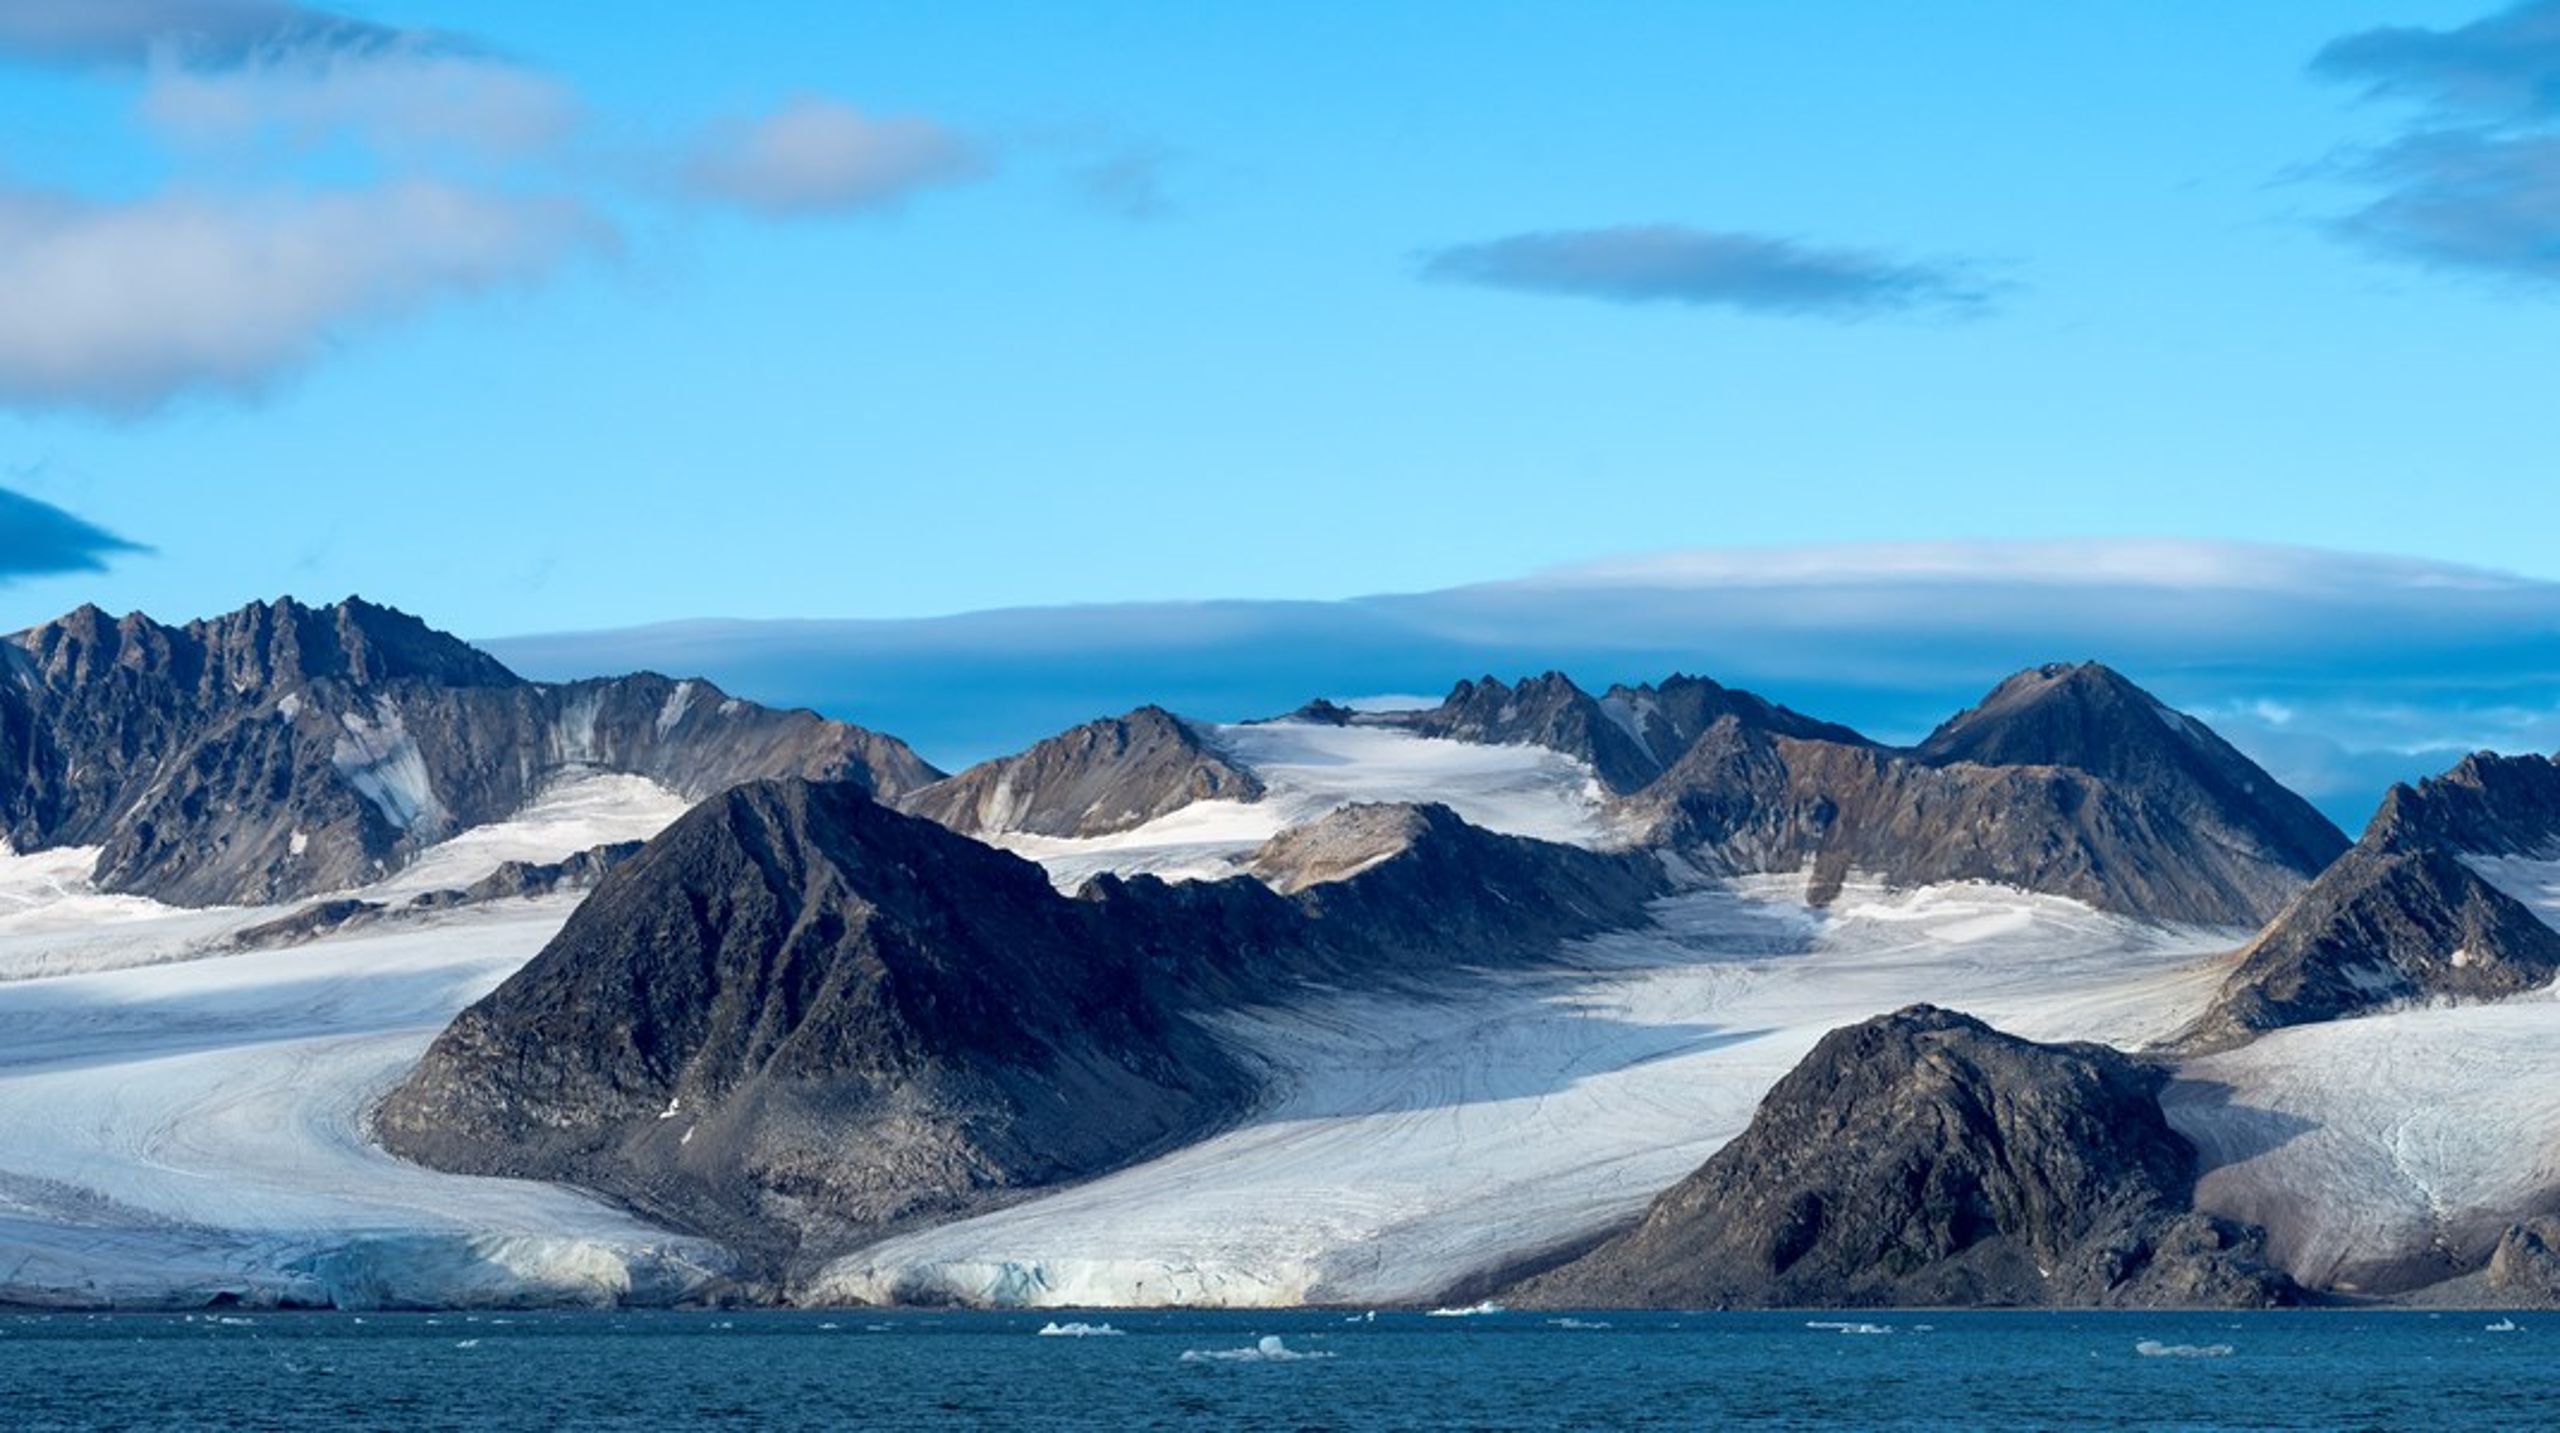 På Svalbard har vi den varmeste permafrost så langt mod nord – typisk med temperaturer helt op mod -2,5 grader i 20 meters dybde, skriver Hanne Hvidtfeldt Christiansen.